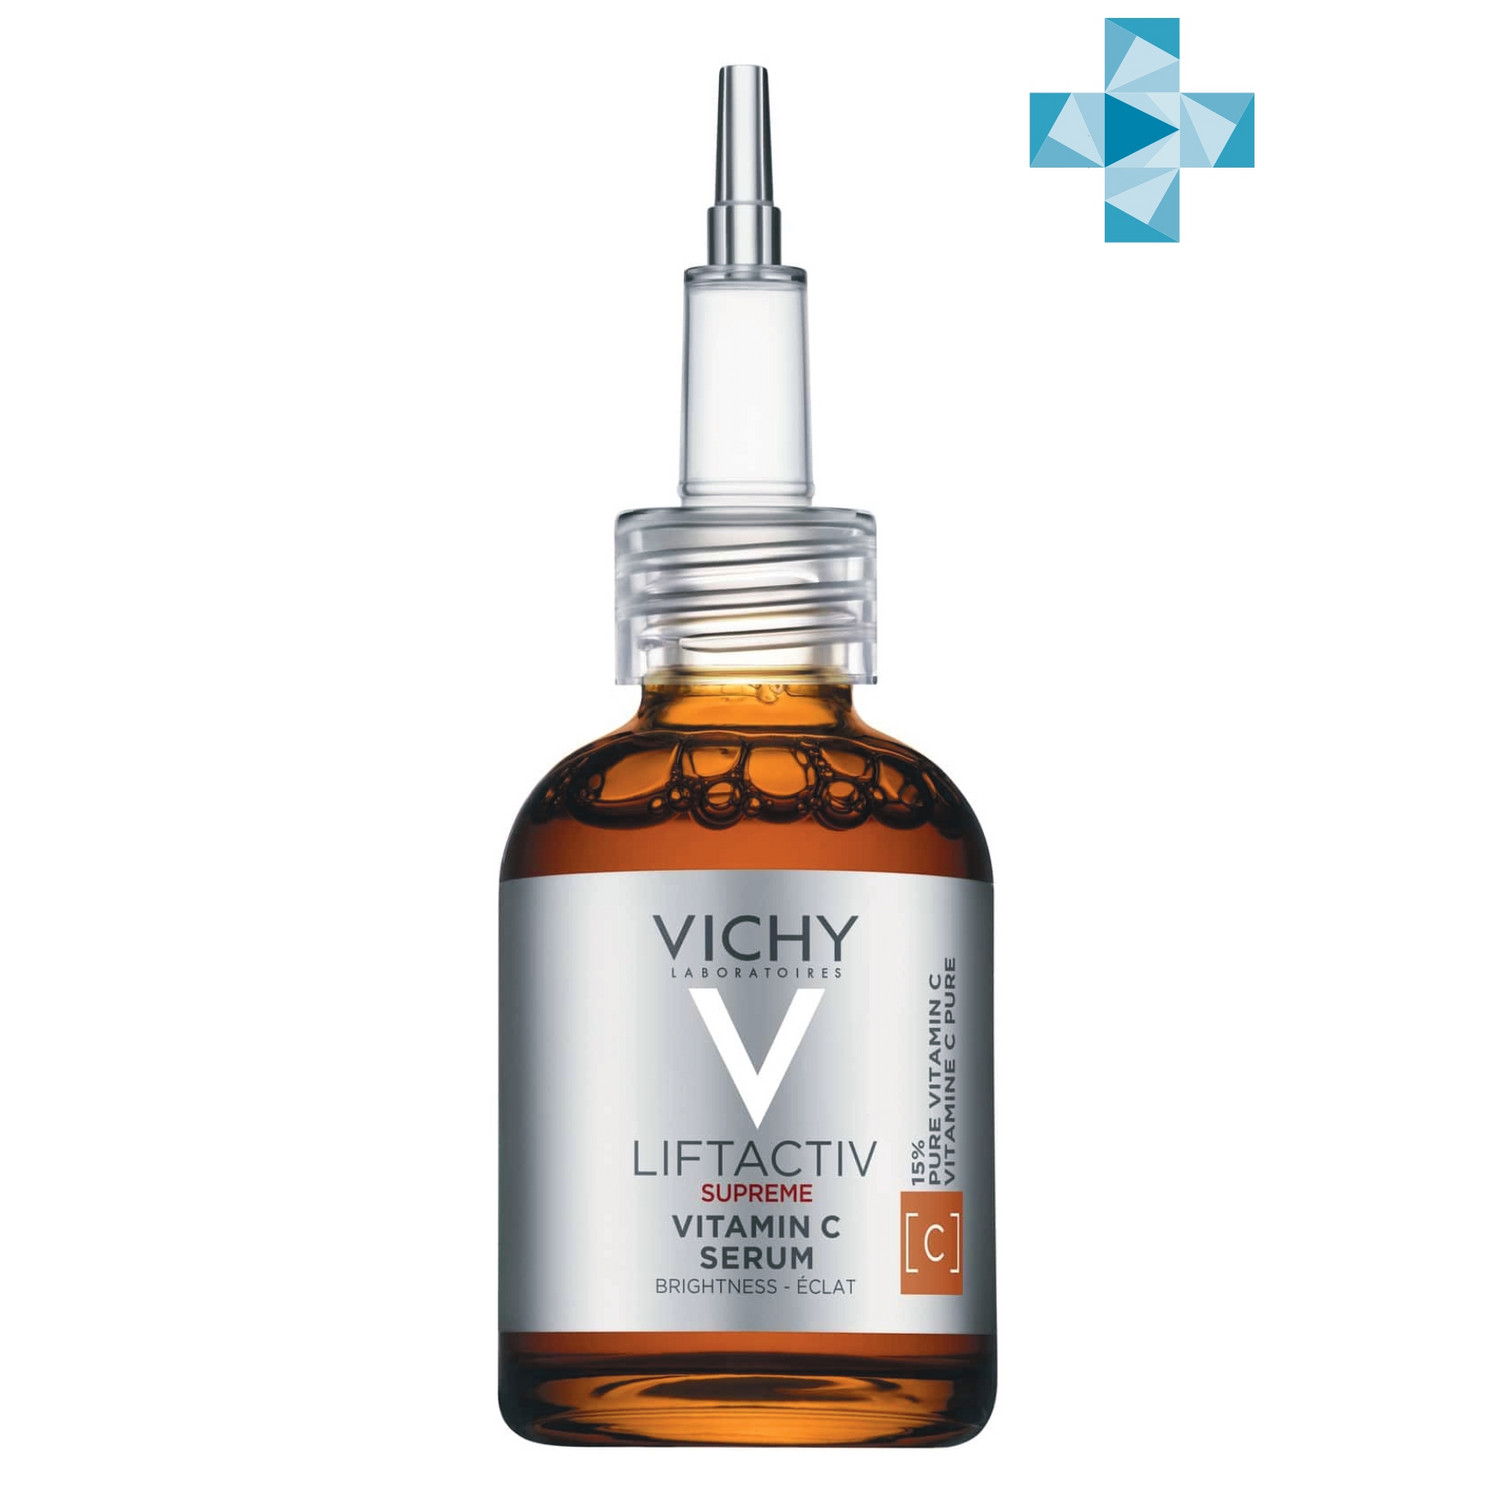 Vichy Концентрированная сыворотка Supreme с витамином С для сияния кожи, 20 мл (Vichy, Liftactiv) концентрированная сыворотка с витамином с для сияния кожи liftactiv supreme